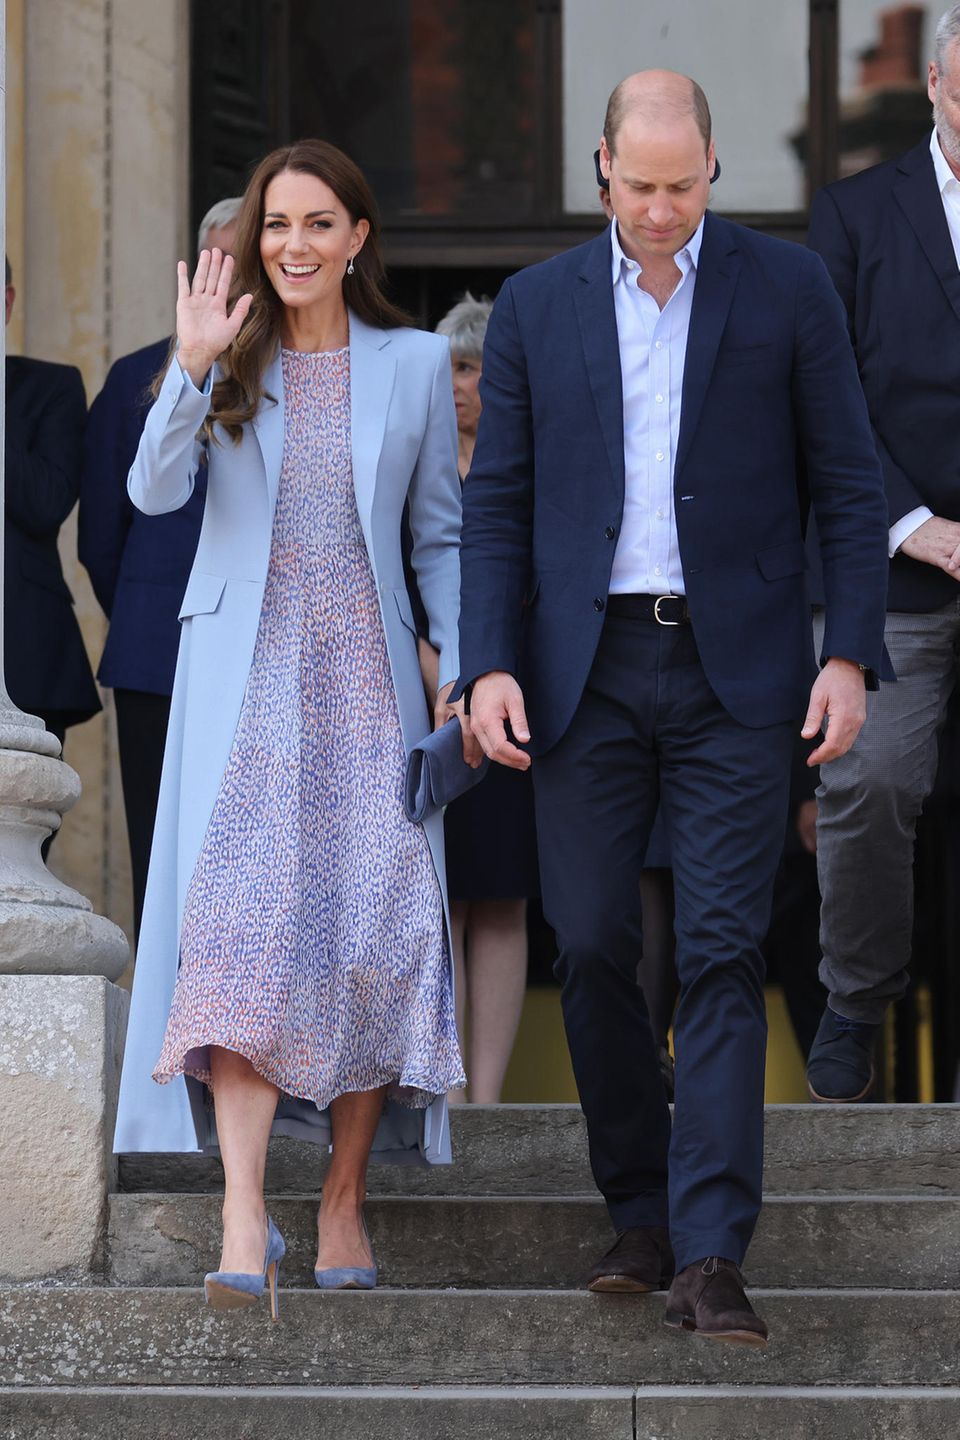 Prinz William und Herzogin Catherine besuchen den Cambridge County Day. Passend zum guten Wetter hat sich Kate für ein sommerliches Kleid von LK Bennett London entschieden. Dazu kombiniert sie einen hellblauen Mantel, der leicht tailliert ist und eine etwas dunklere Clutch von Emmy London. 